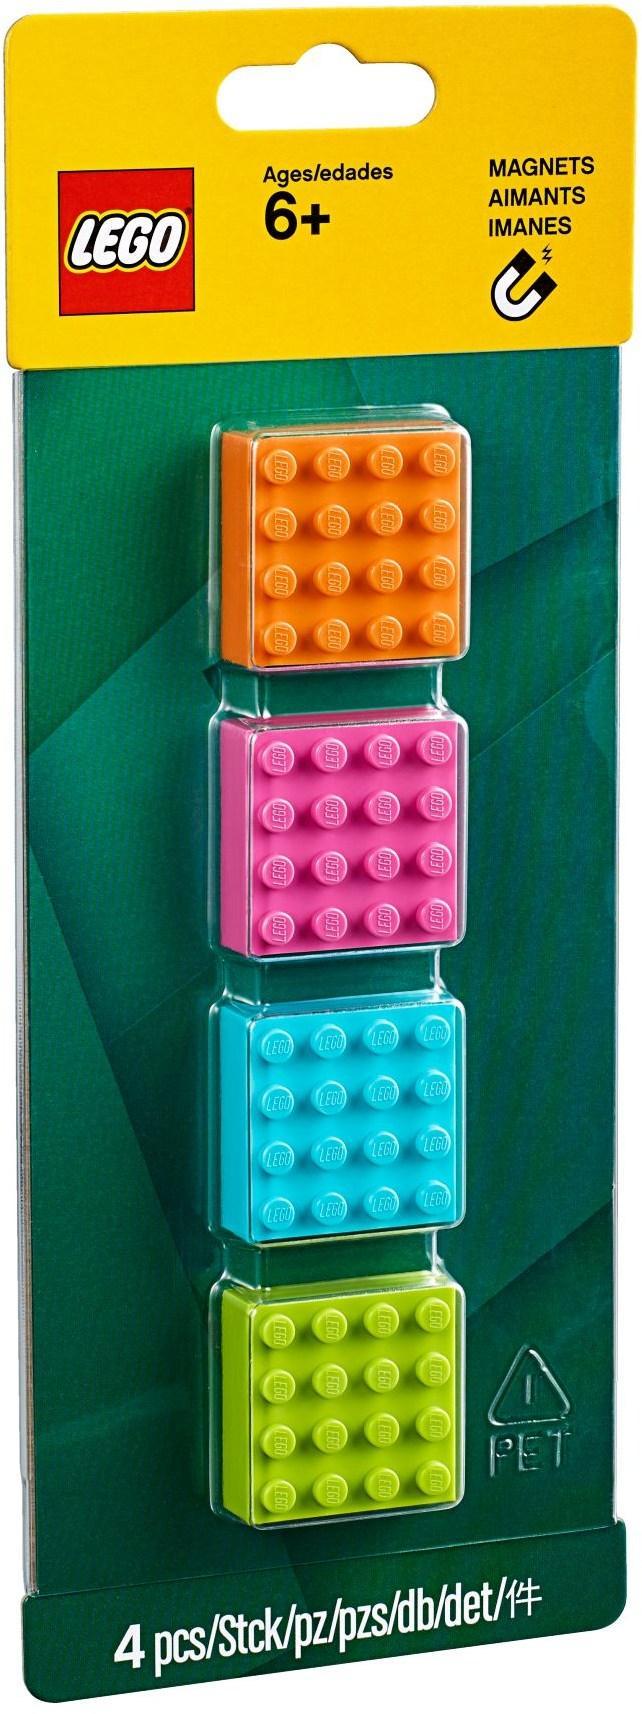 LEGO 4 4x4 Magnets 853900 Gear LEGO Gear @ 2TTOYS LEGO €. 7.49